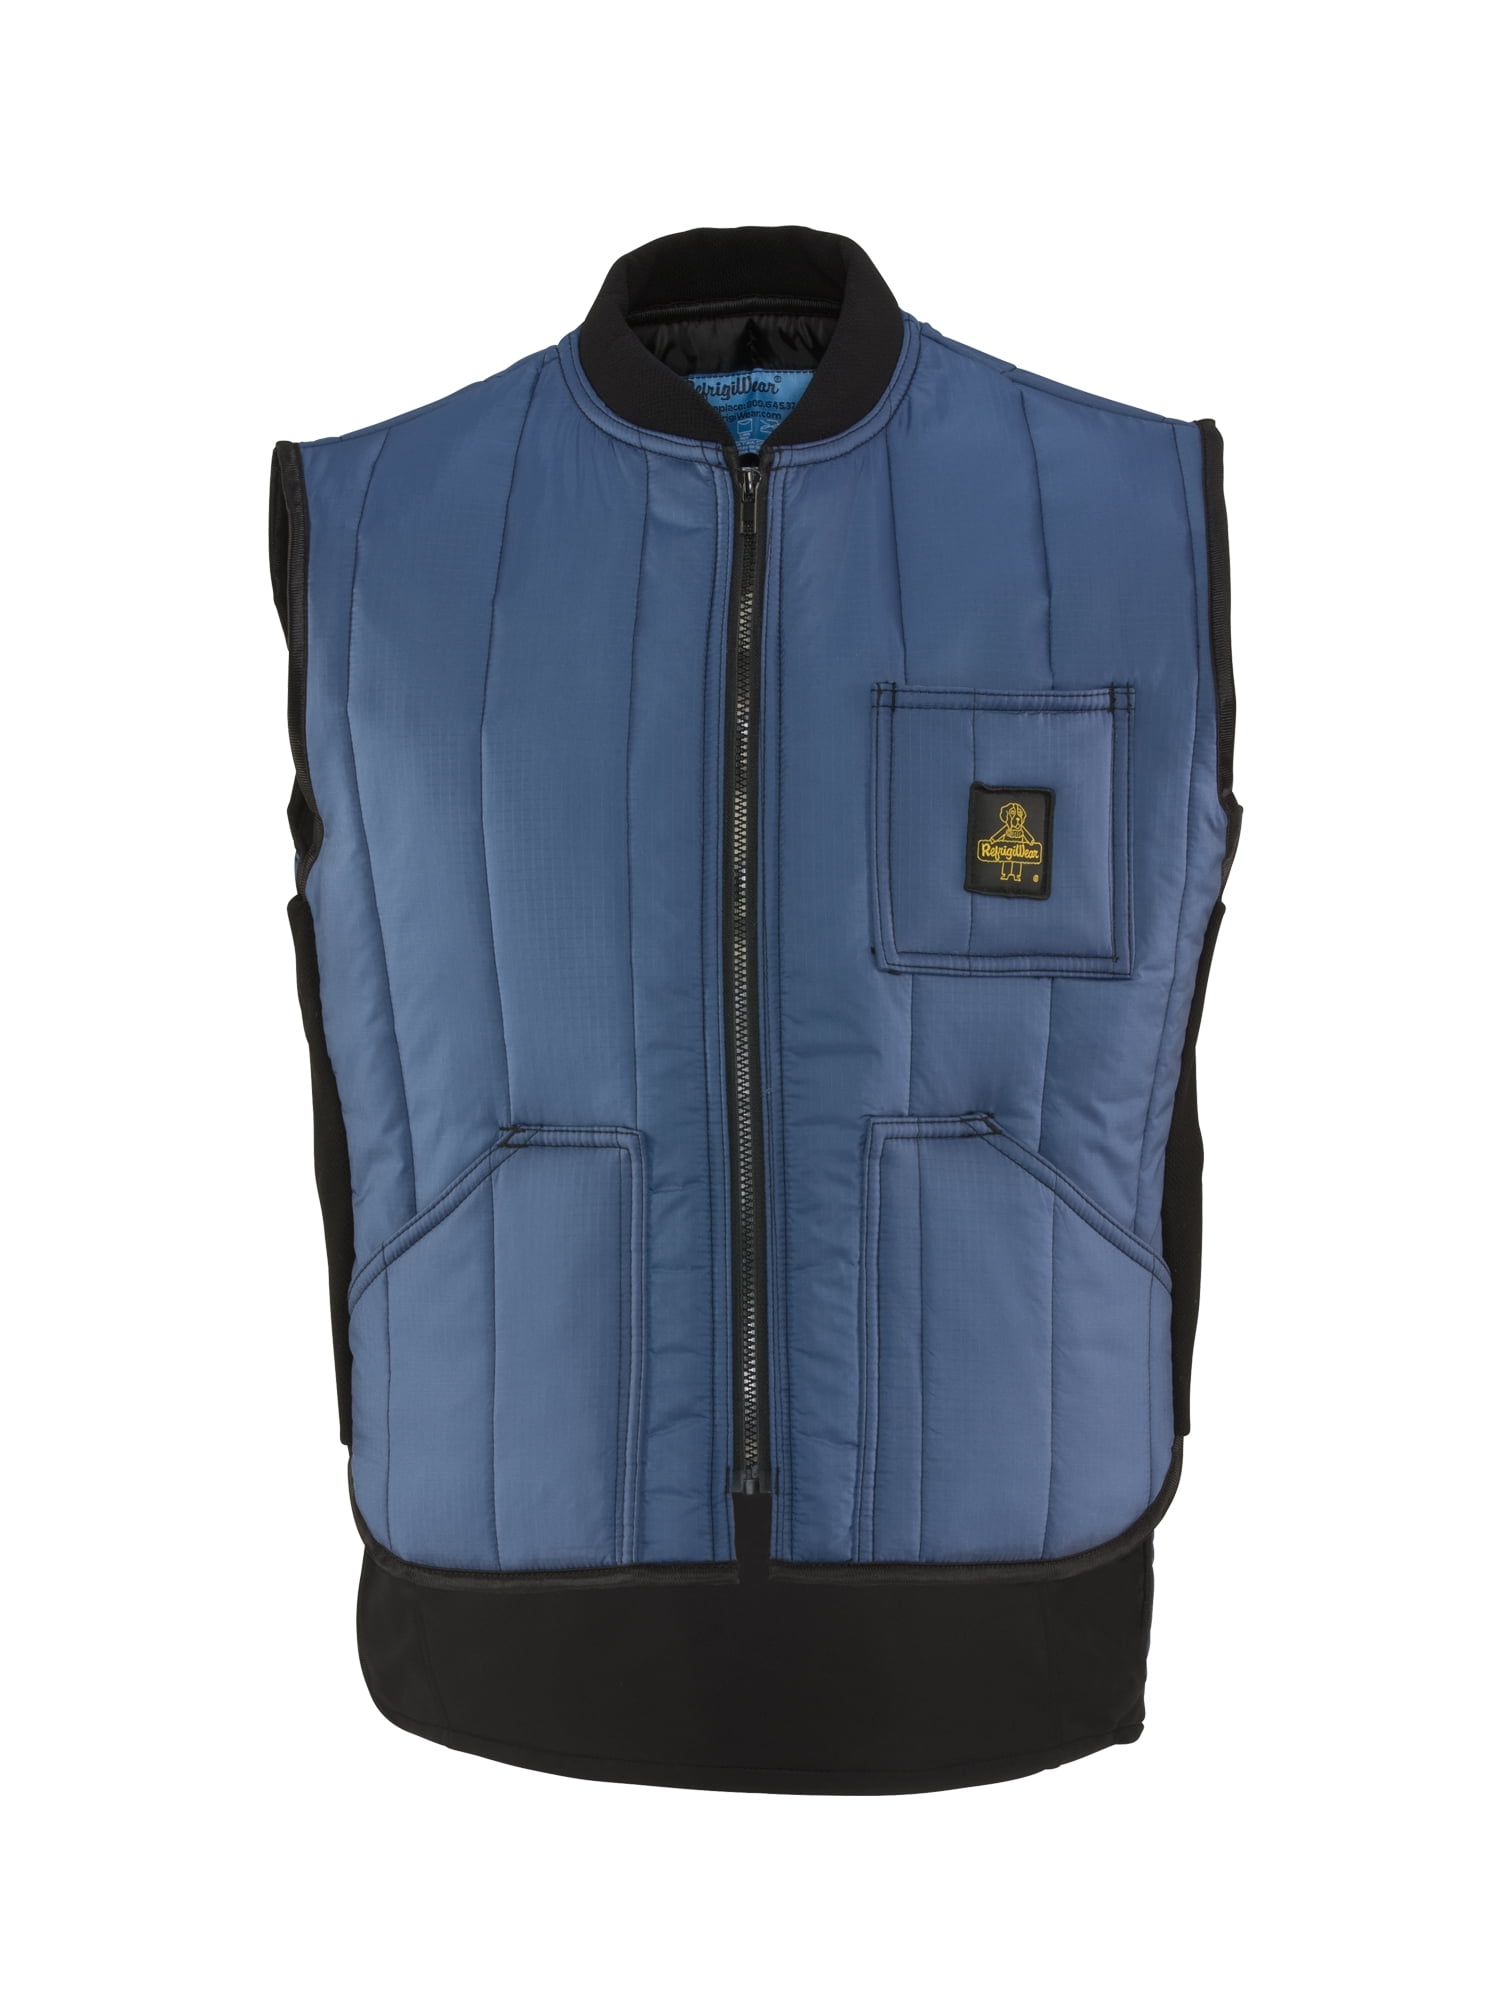 RefrigiWear ChillBreaker Lightweight Insulated Parka Jacket Workwear Coat 